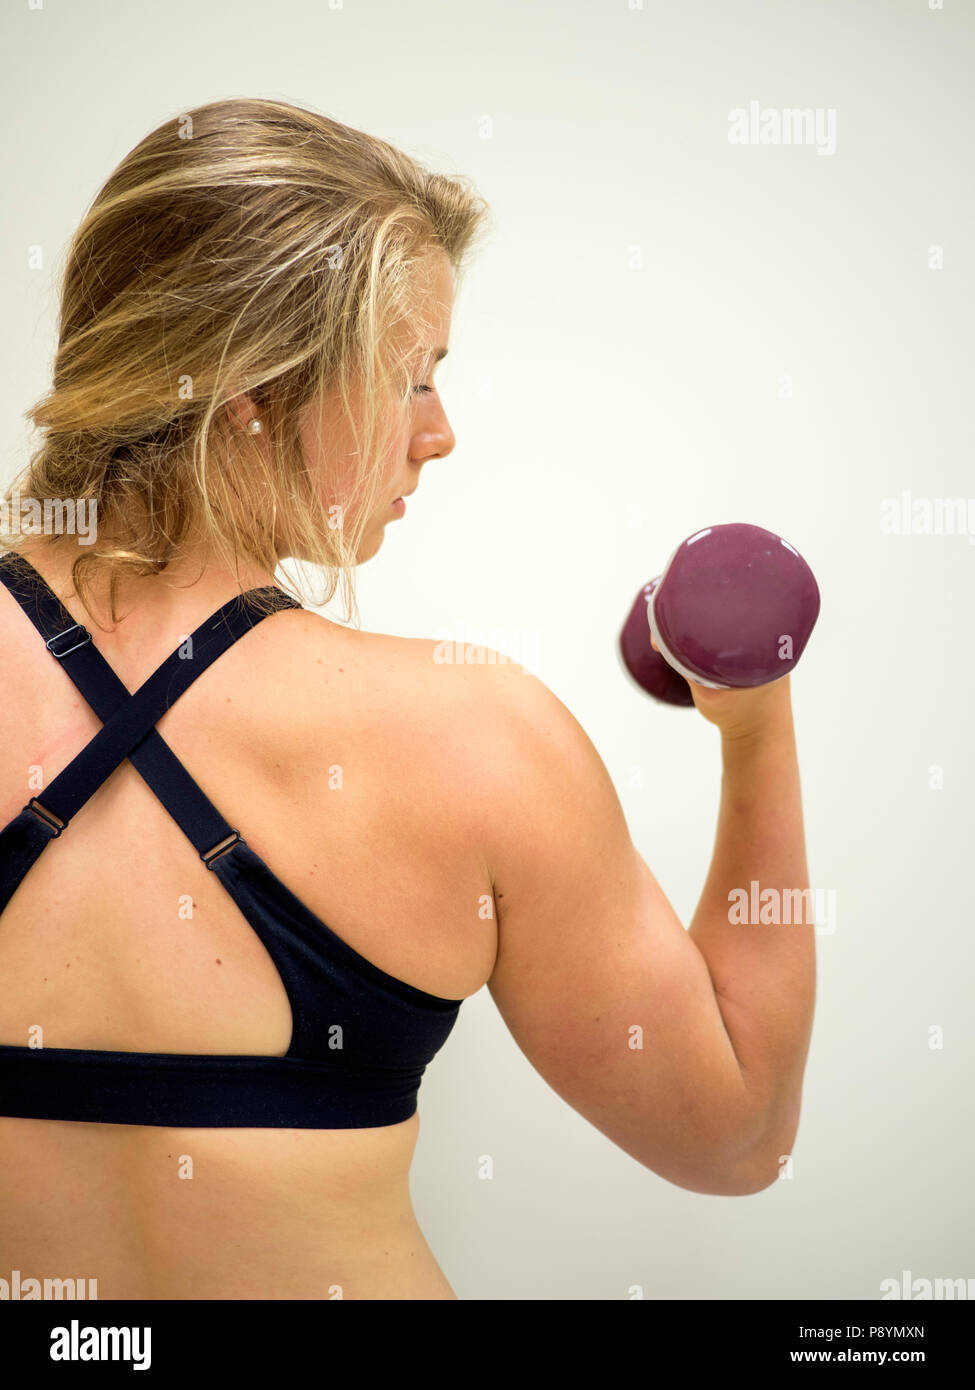 Forte donna femmina facendo bicipite riccioli guardando il peso nel suo braccio Foto Stock